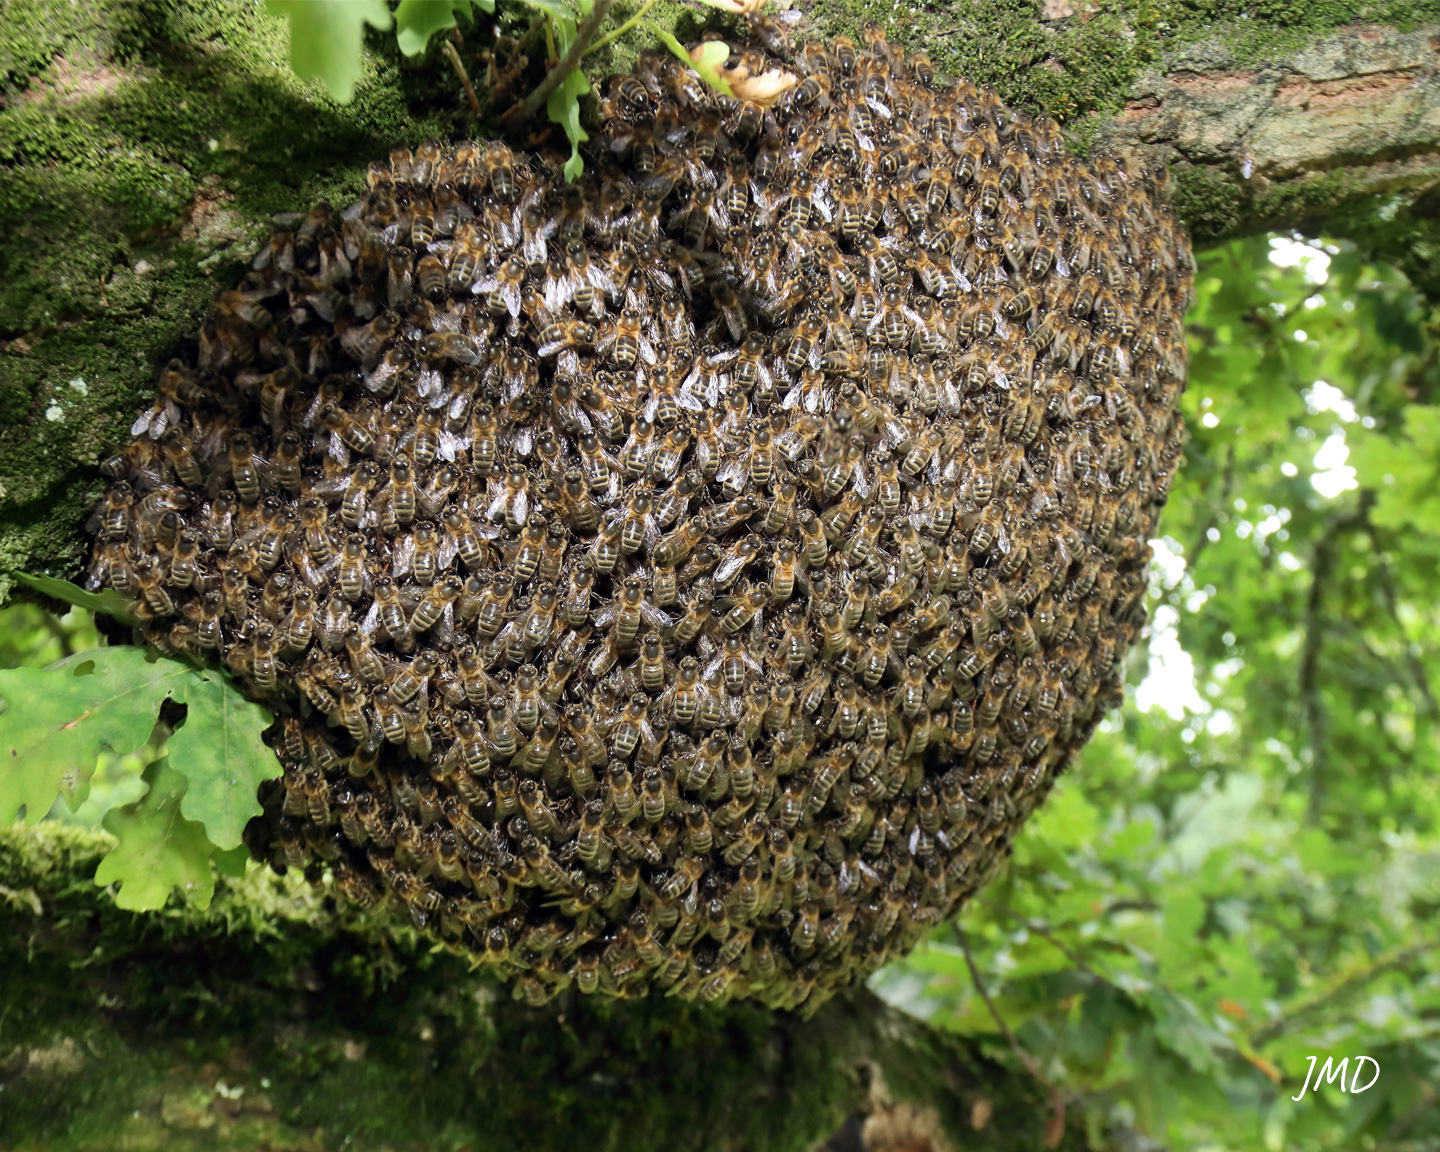 Danse frétillante d’une ouvrière d’Apis mellifera au sein de la ruche. Photo : ©Adobe Stock